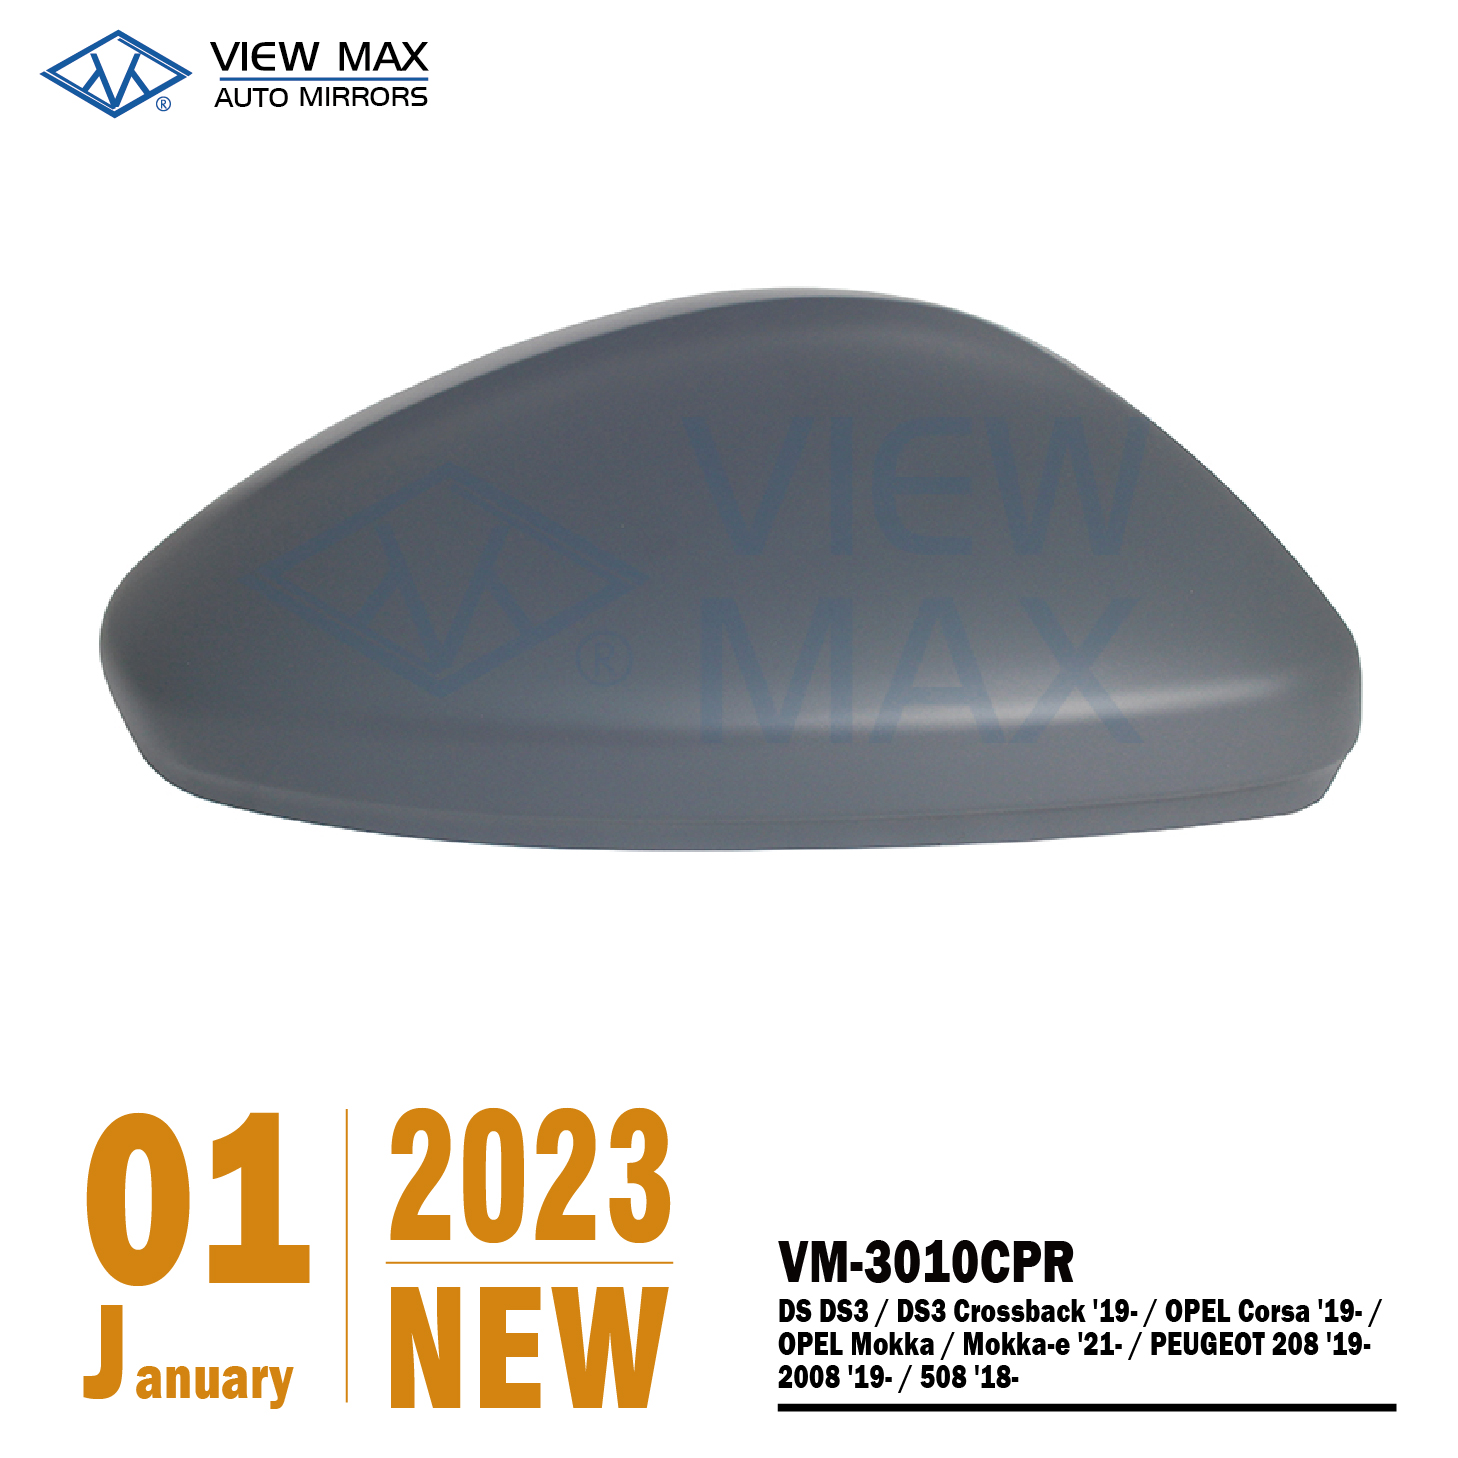 VM-3010CPR Rear Mirror Cover-VM-3010